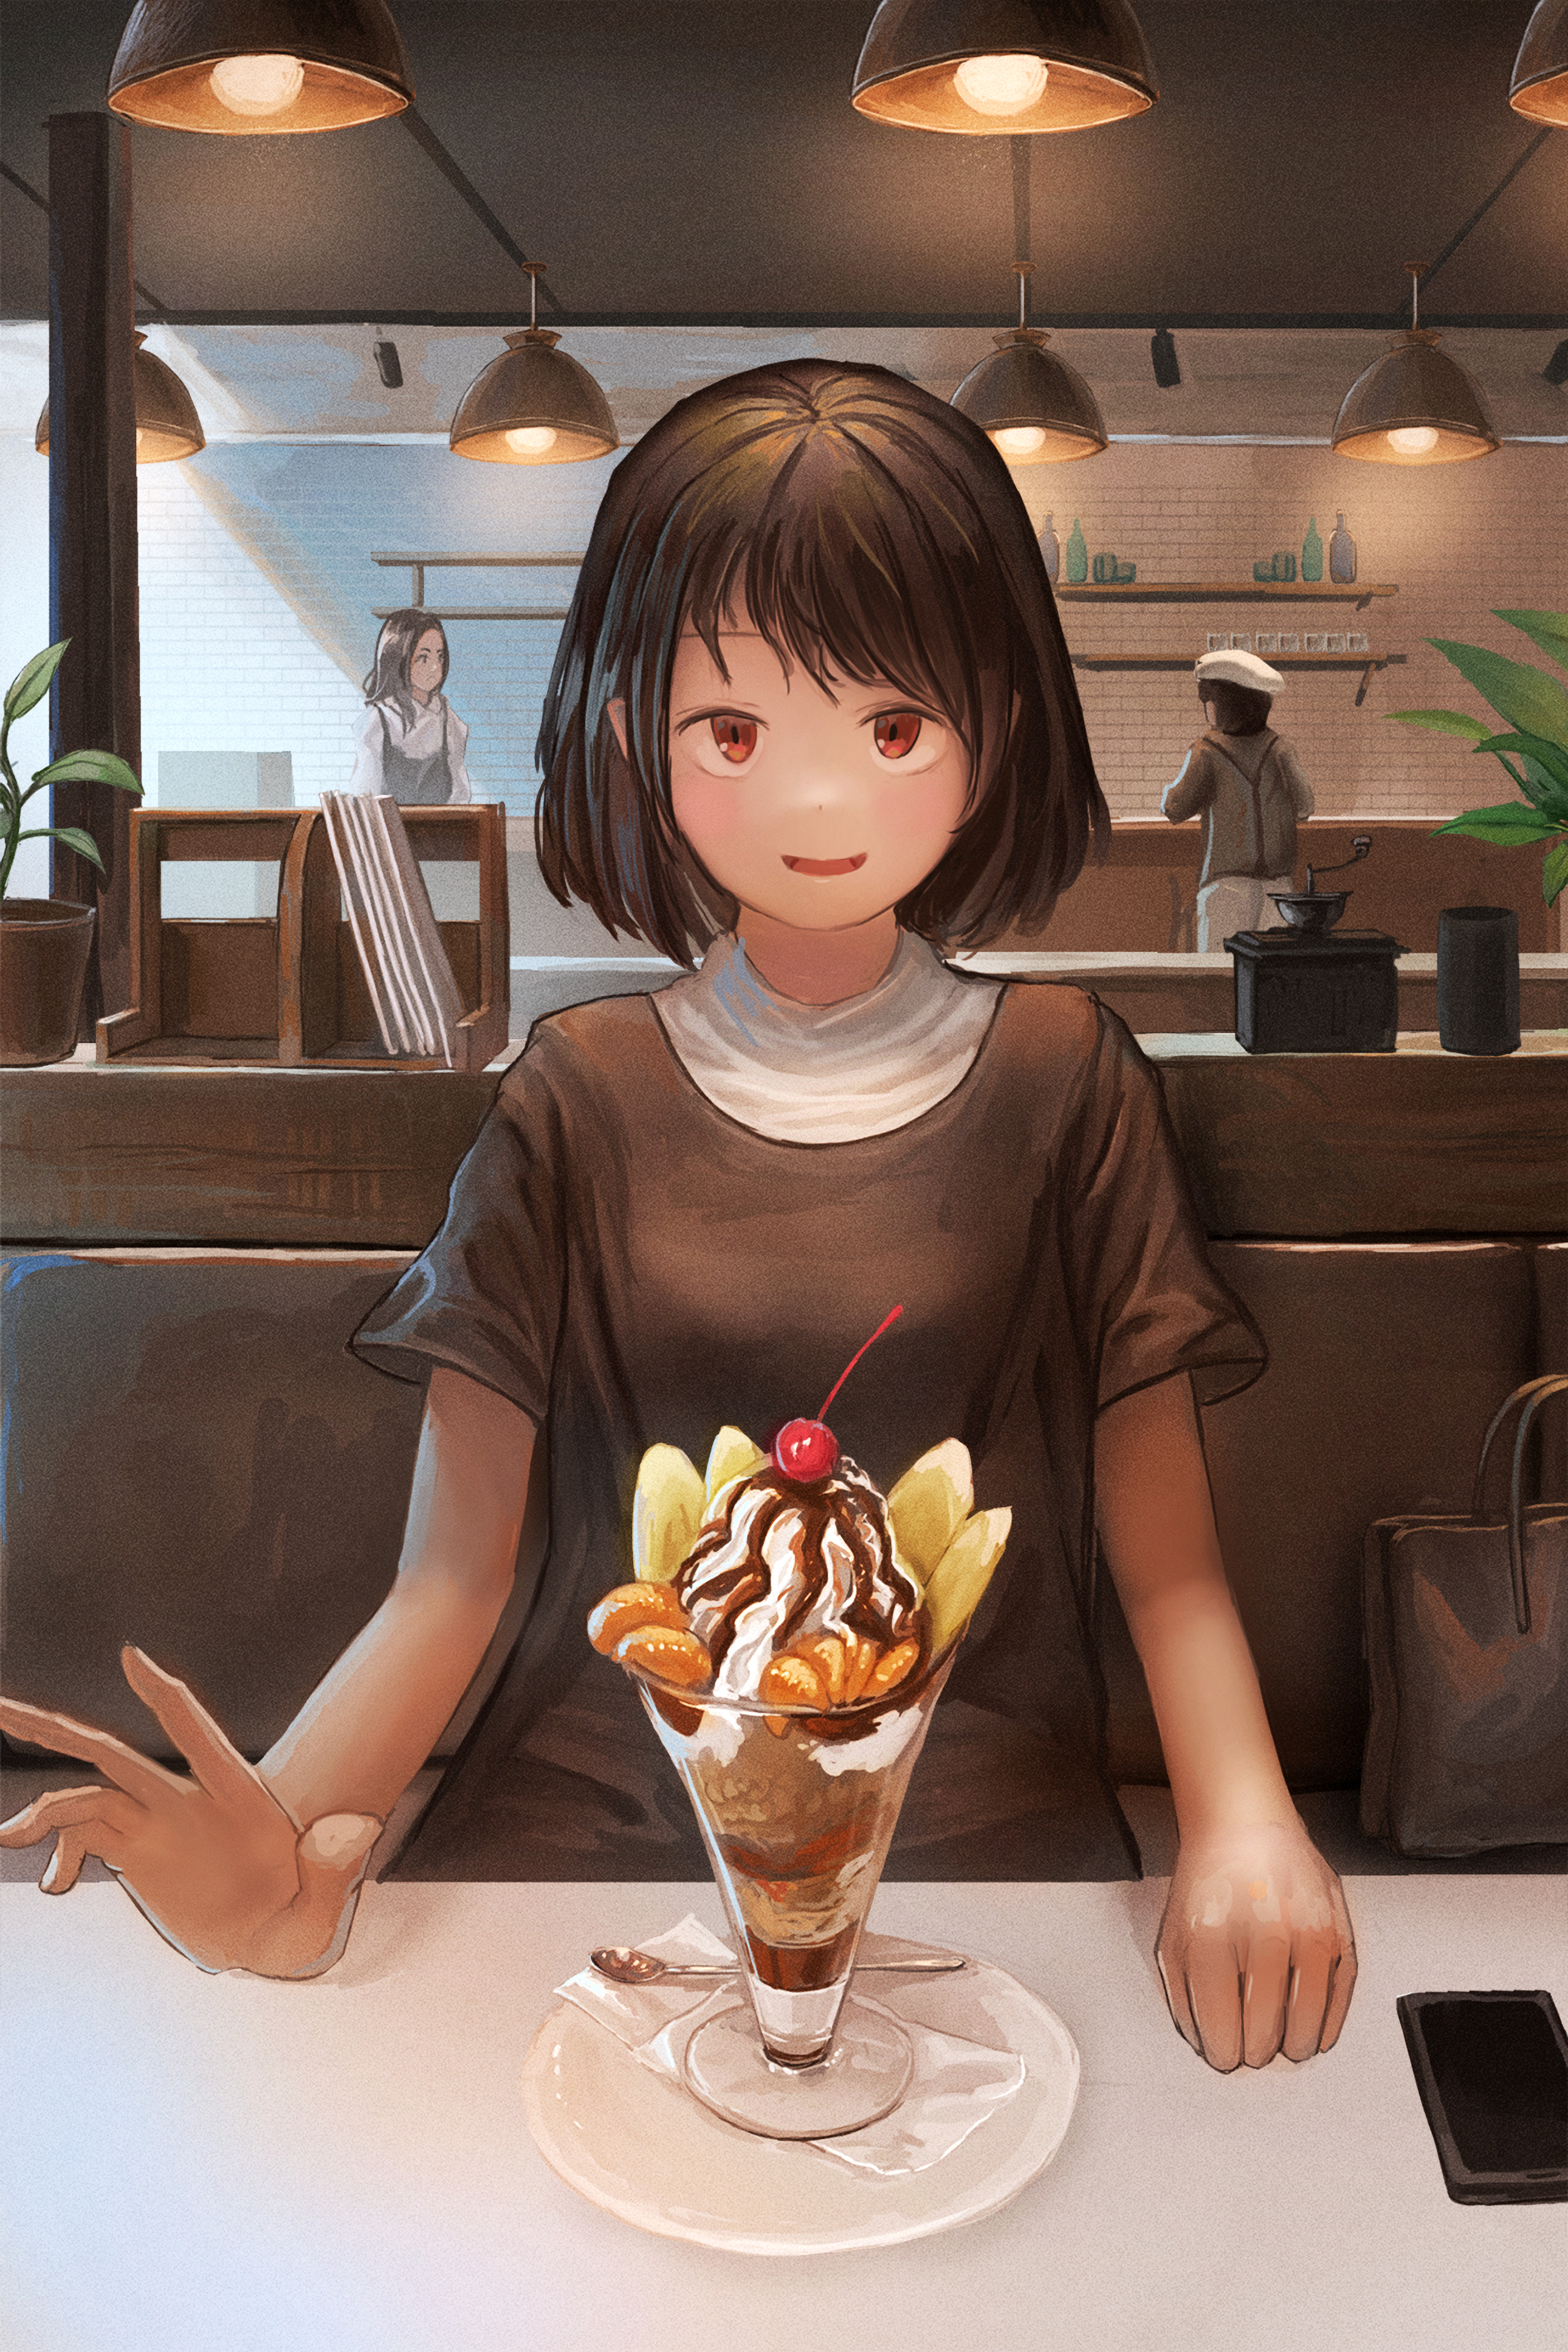 Girl Smile Dessert Date Anime Art